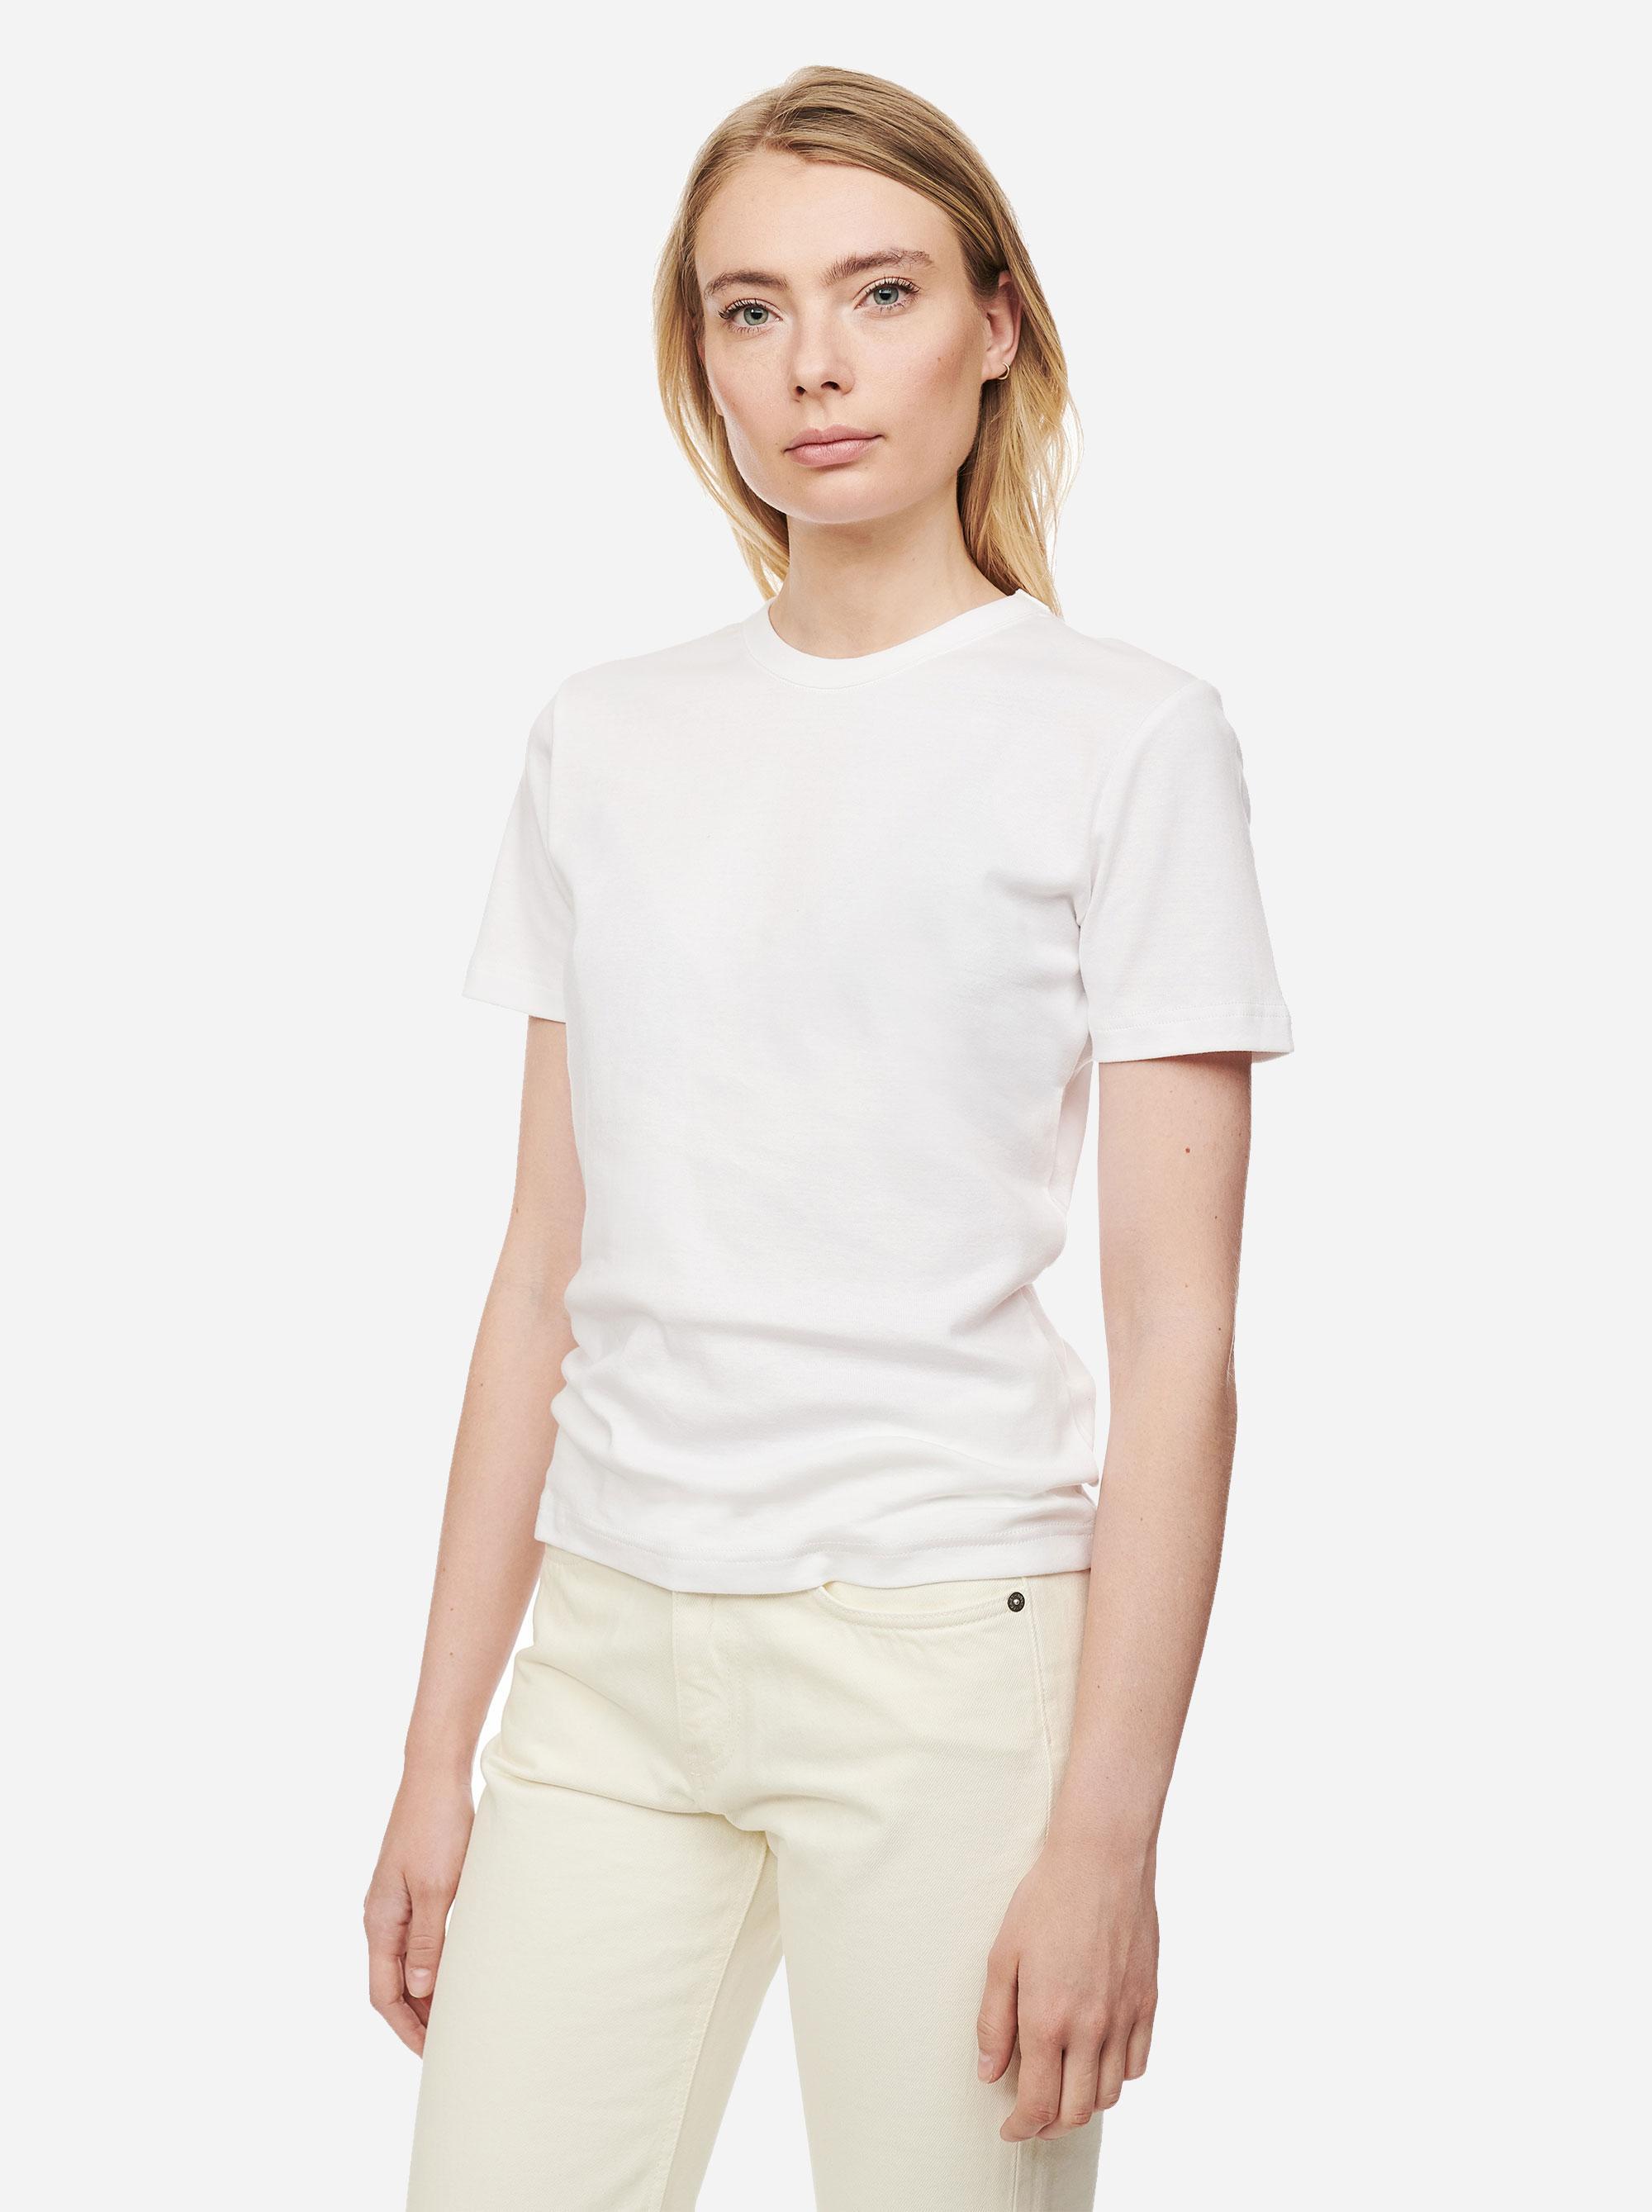 Het perfecte witte T-shirt van Teym